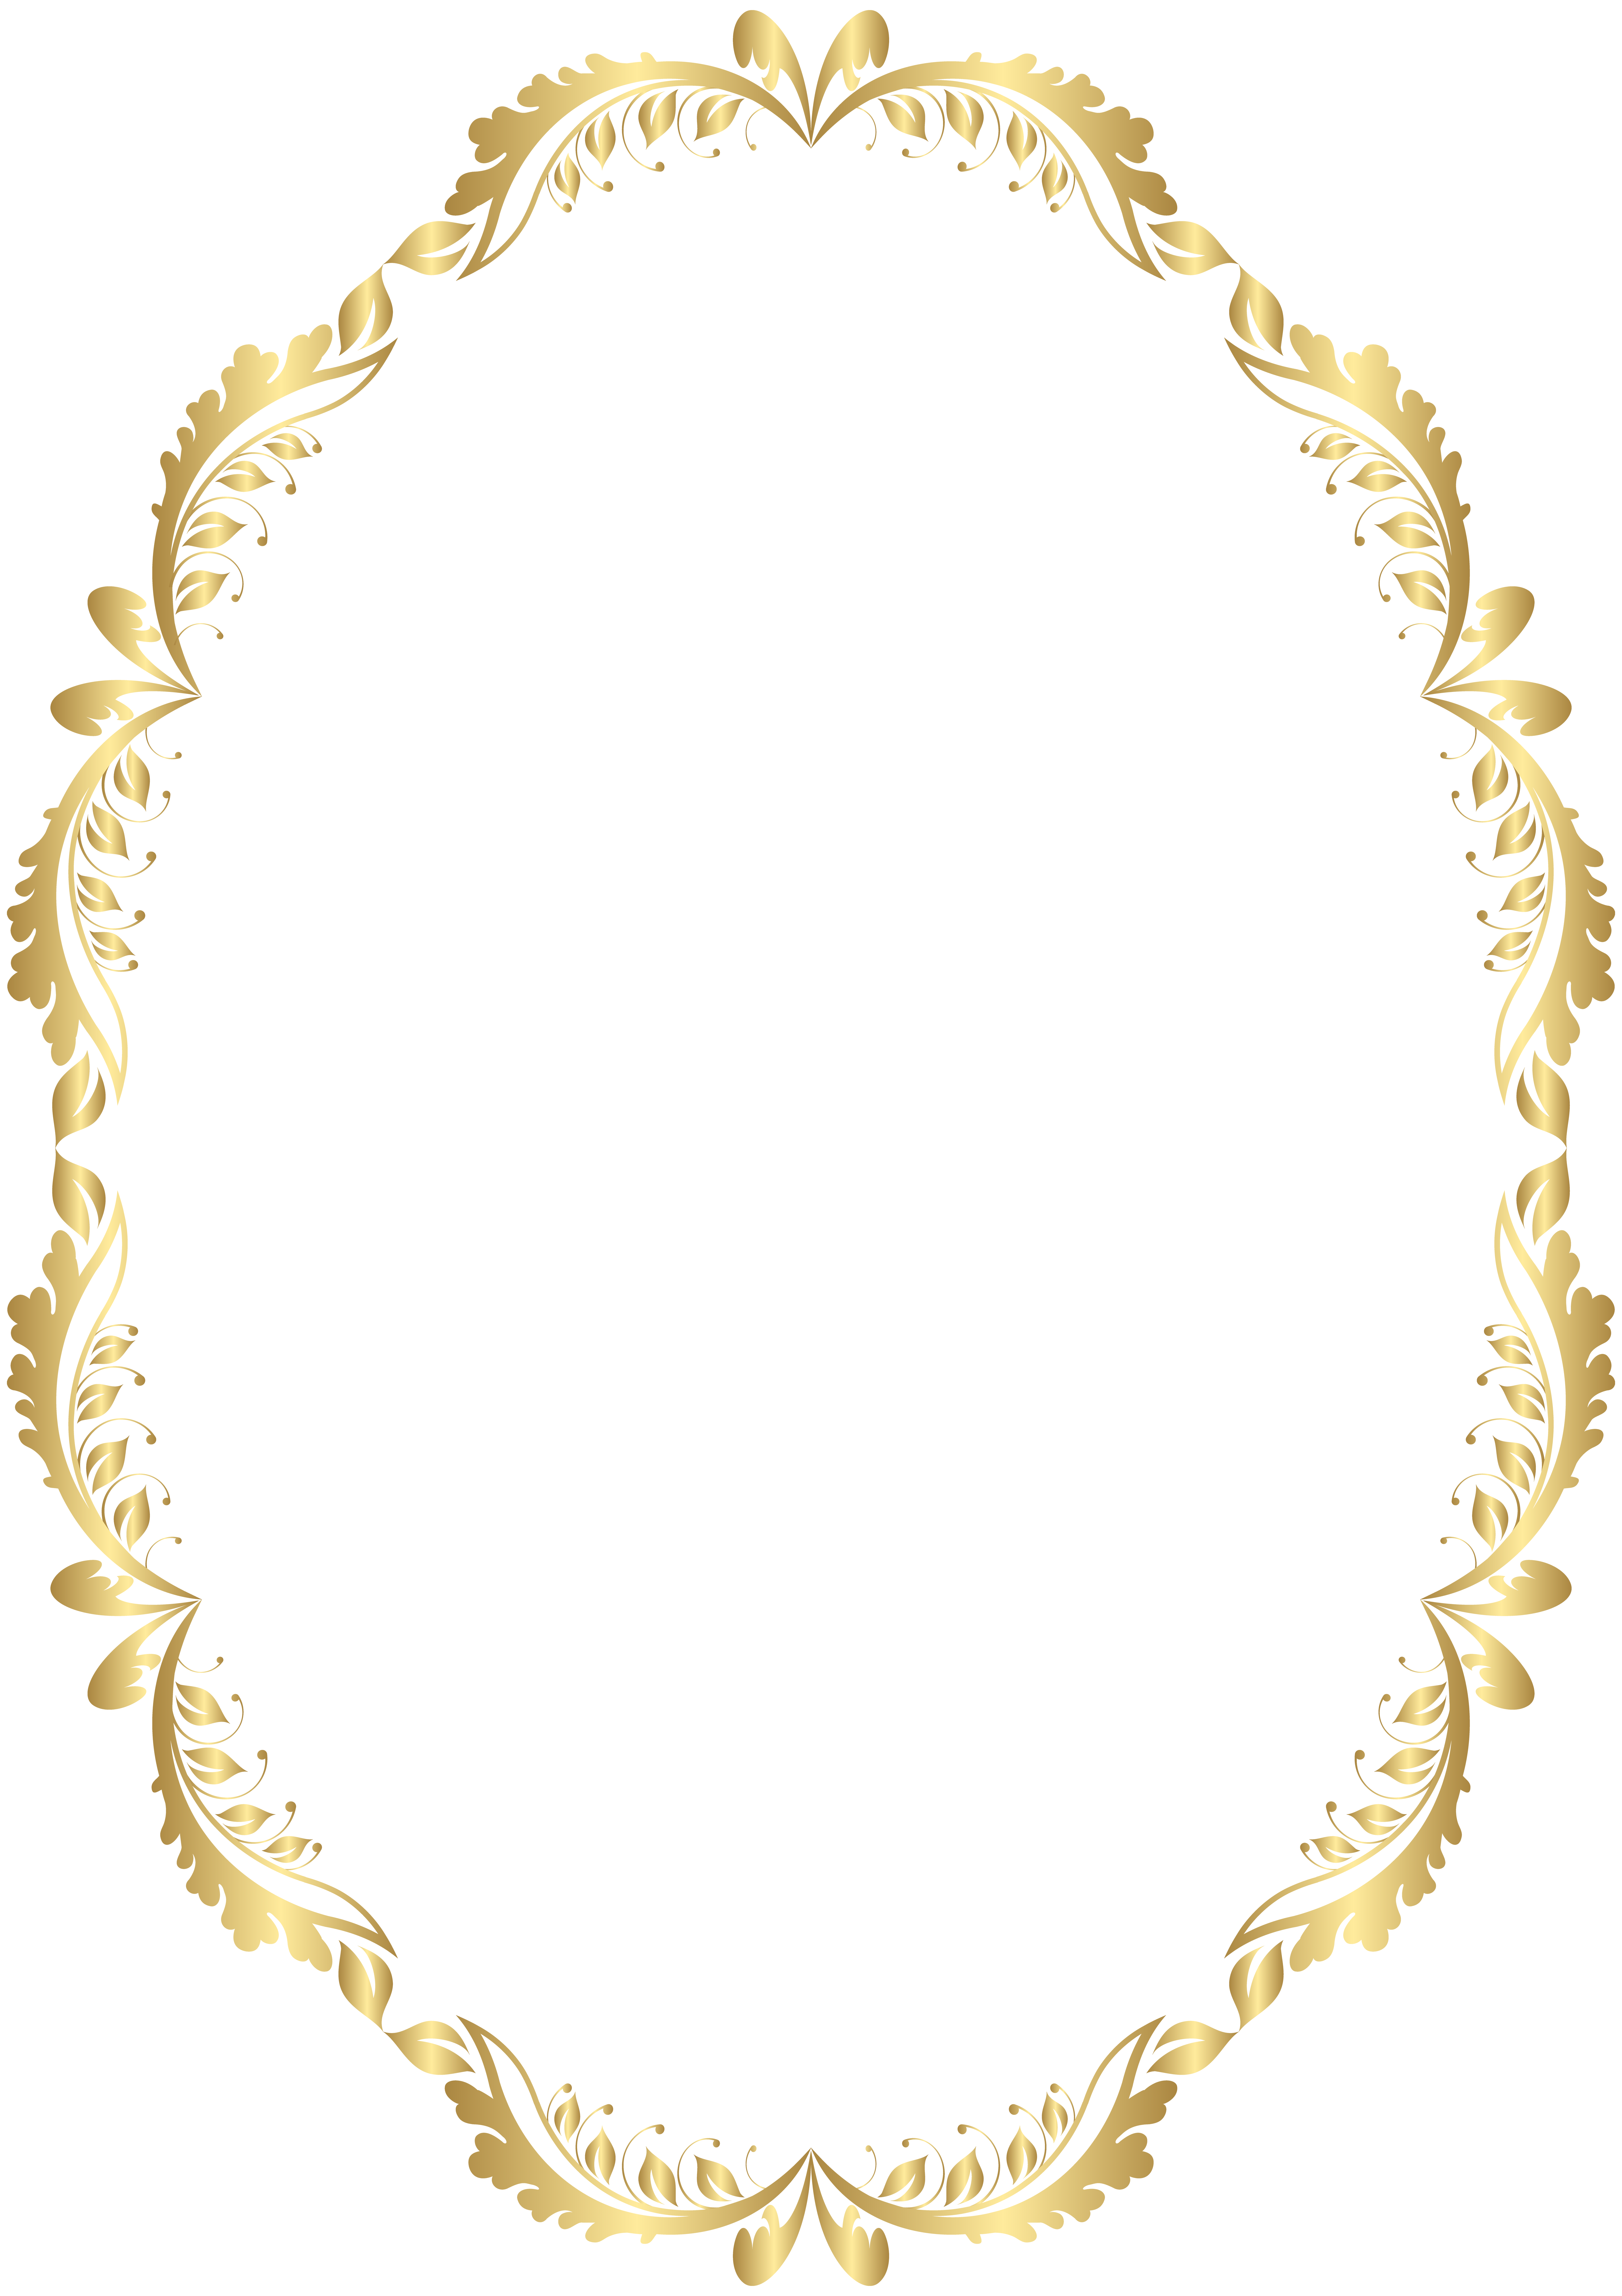 Picture frame Clip art - Golden Oval Border Transparent PNG Clip Art